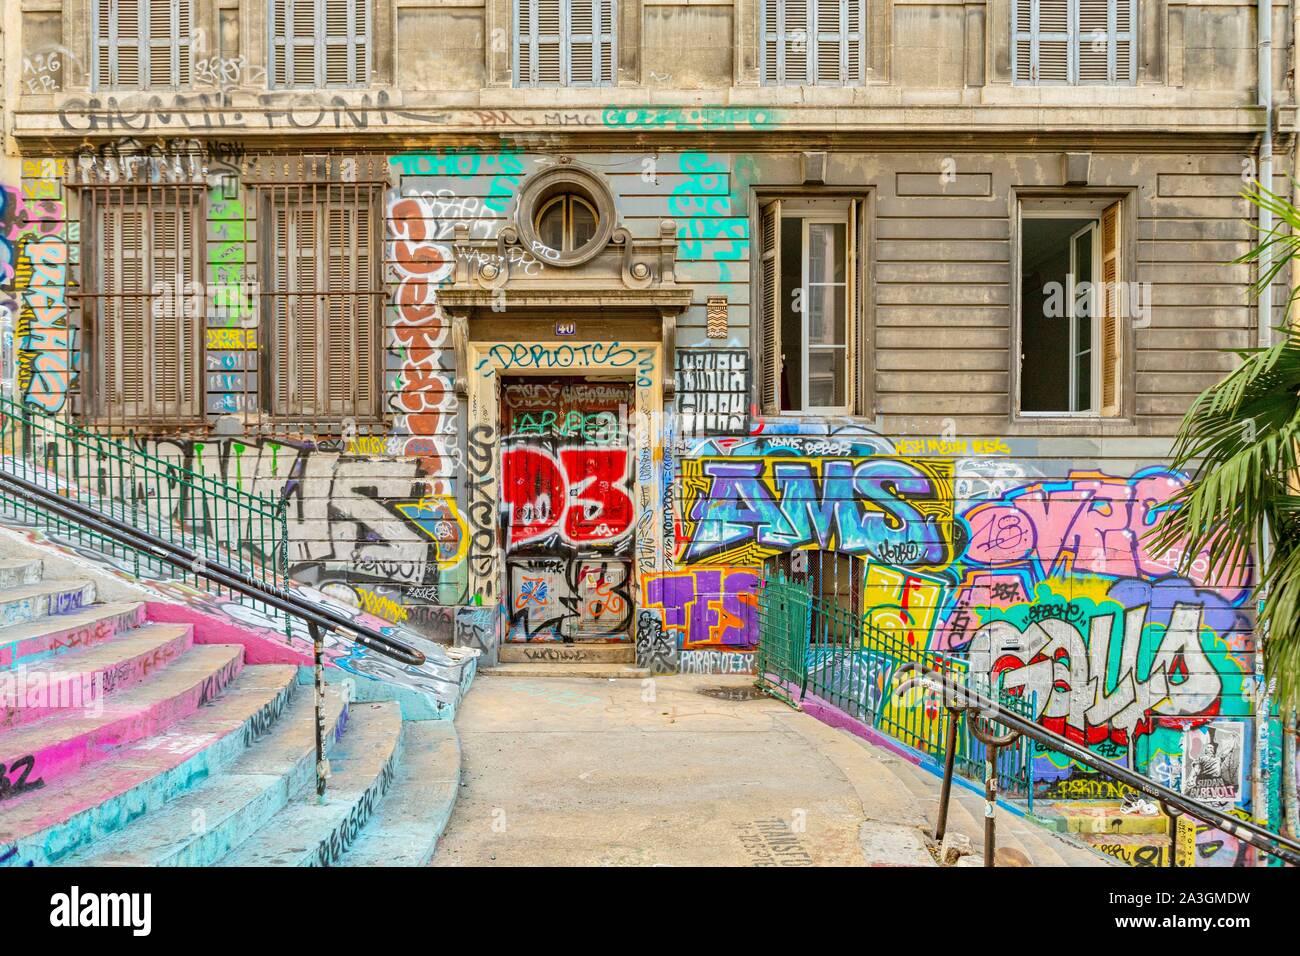 France, Bouches du Rhône, Marseille, le cours Julien escalier, Street Art avec tagg et graffiti Banque D'Images